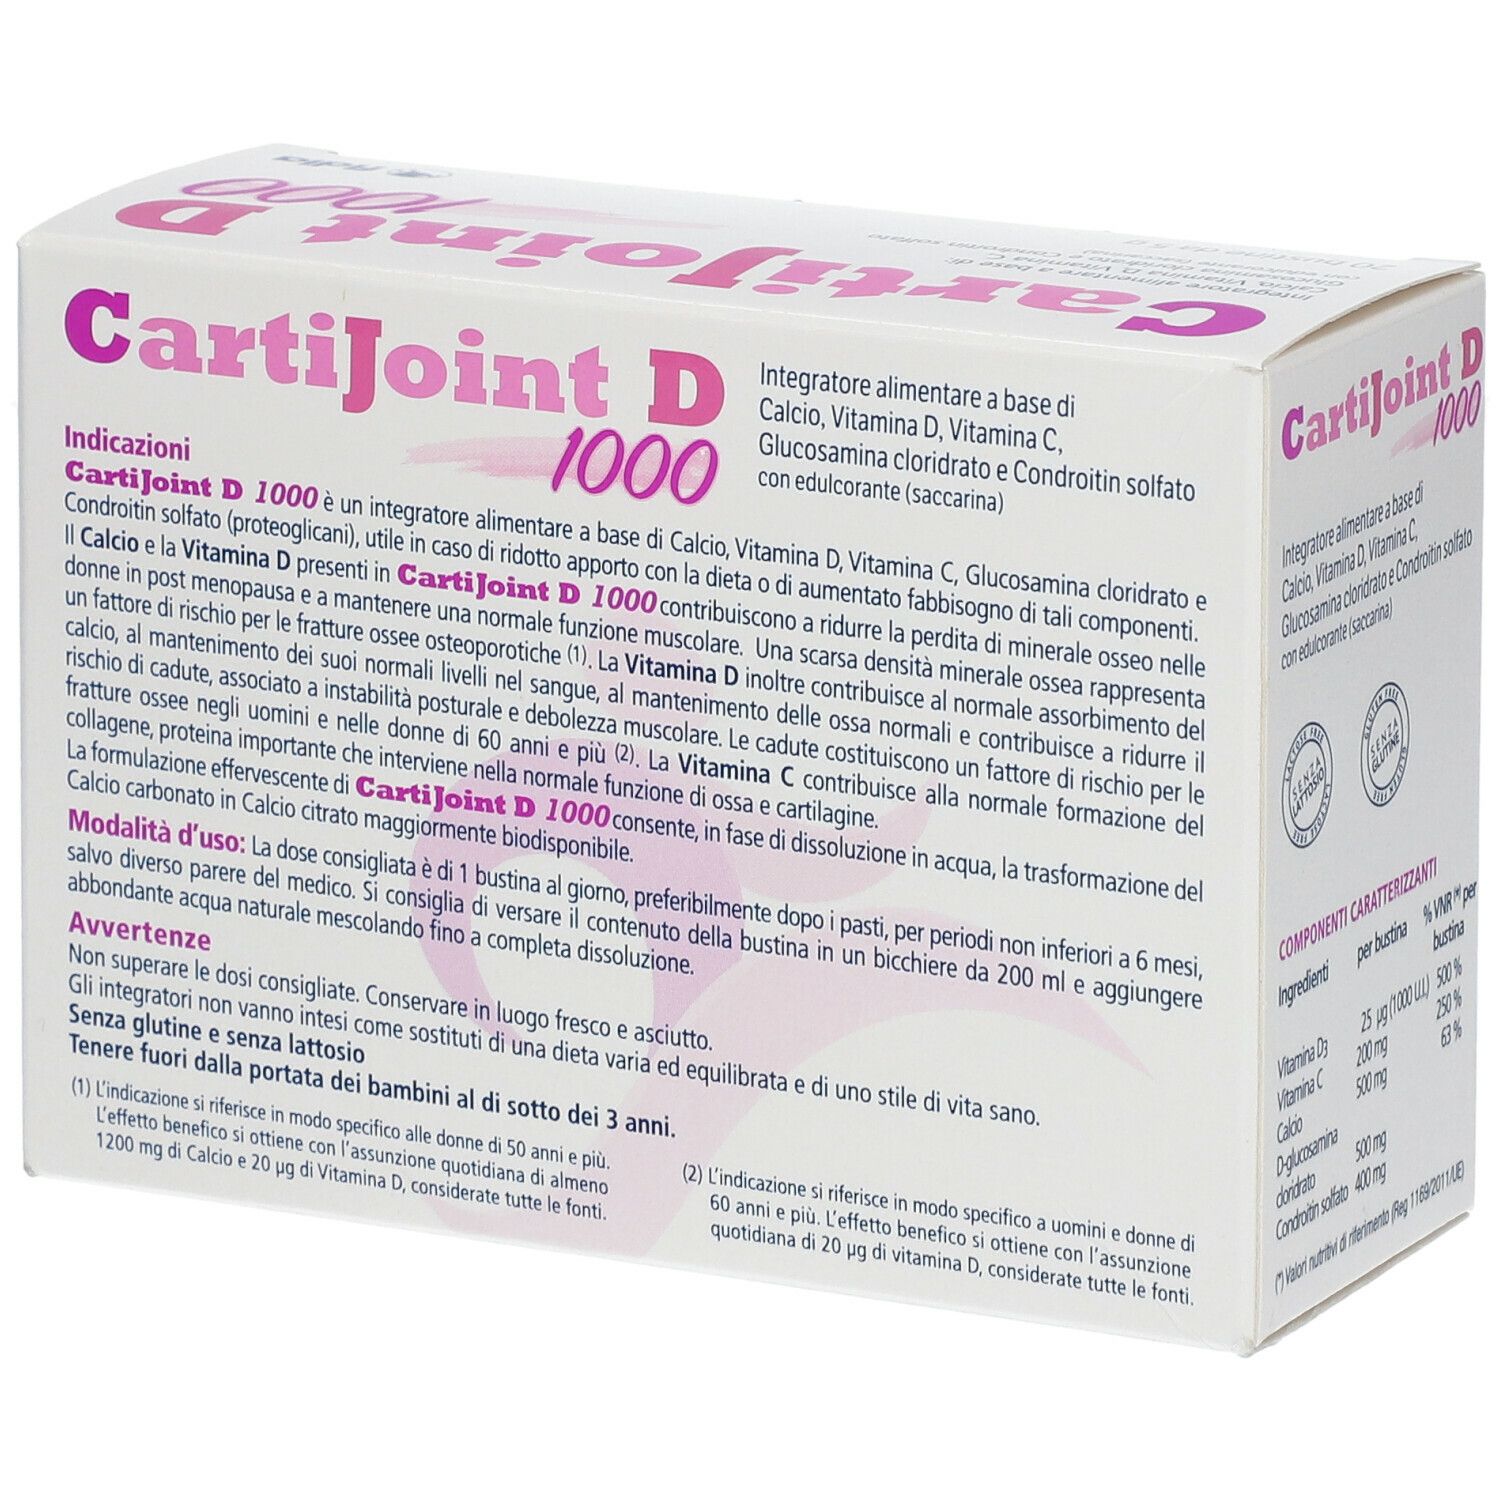 CartiJoint D 1000